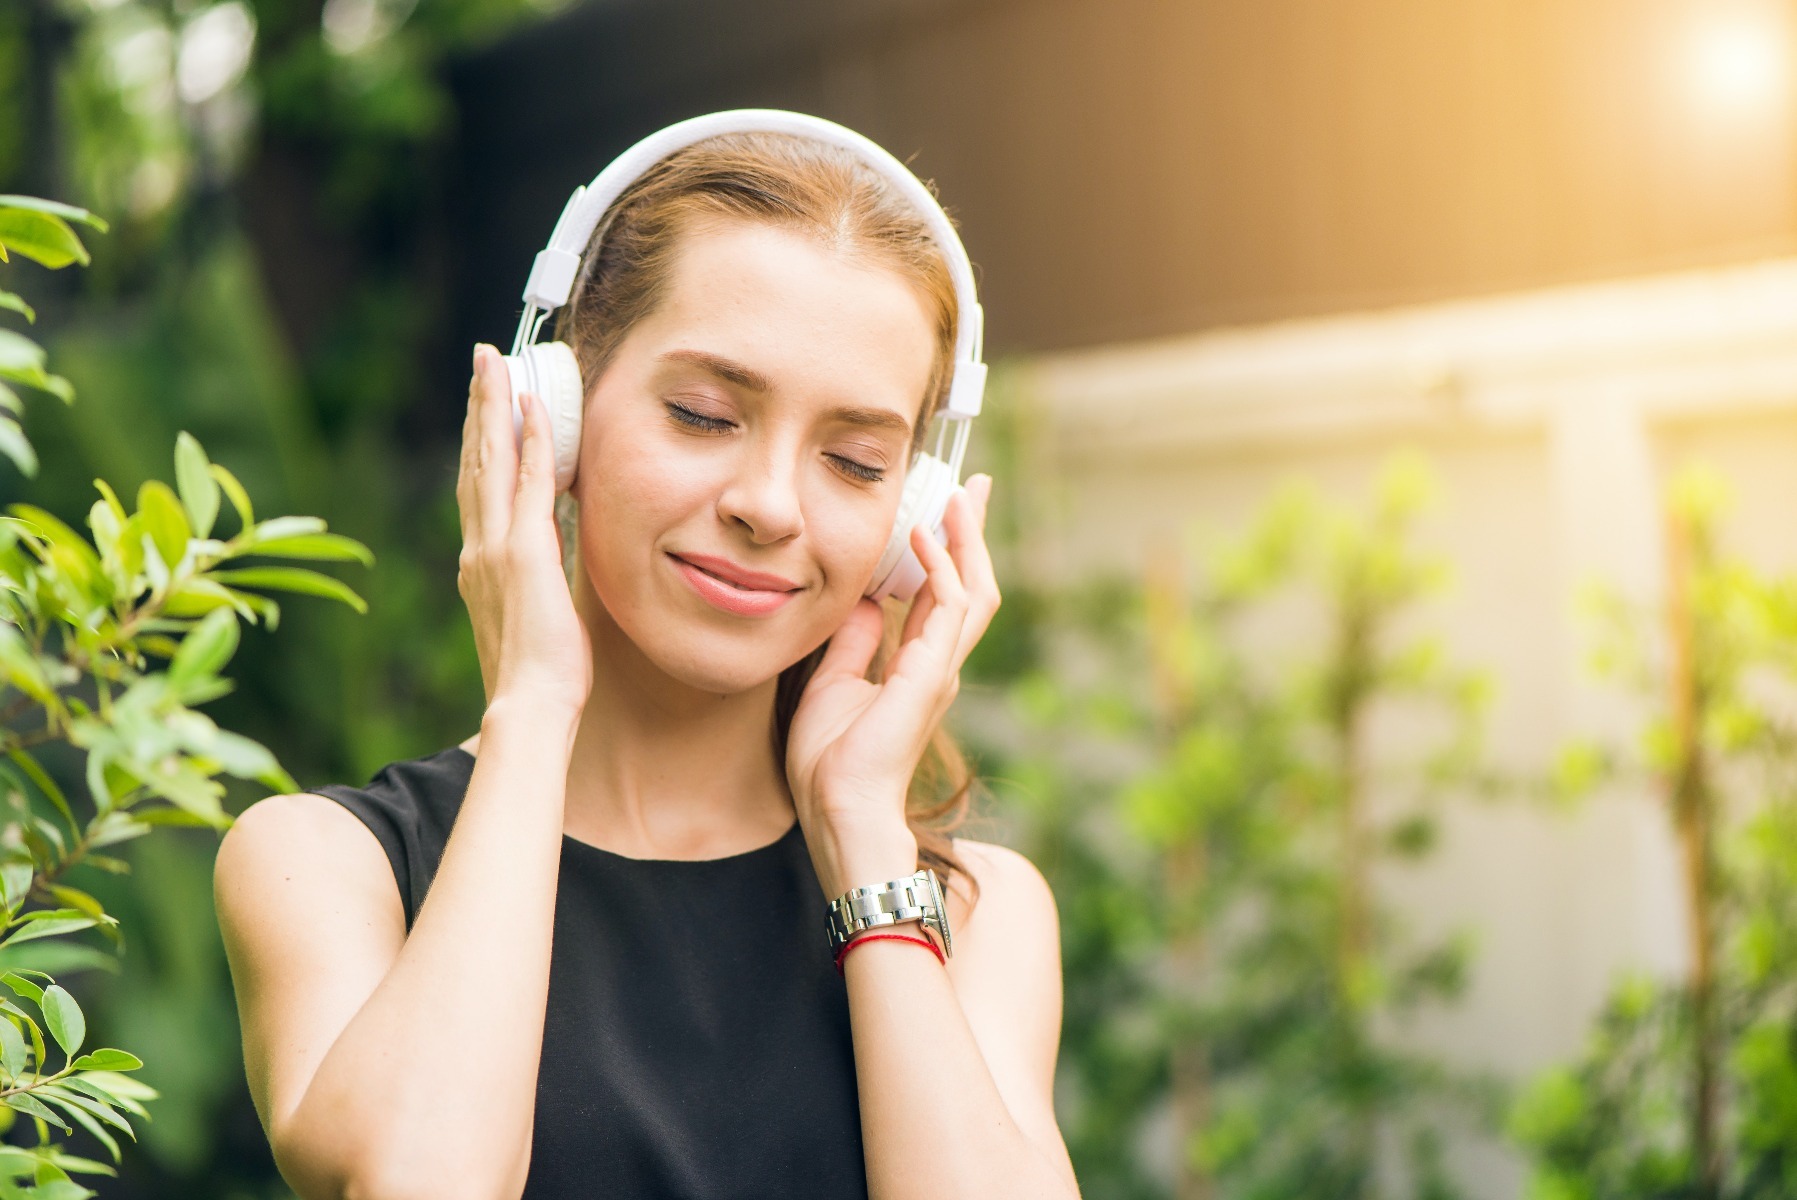 Ways to Destress: Listening to Music